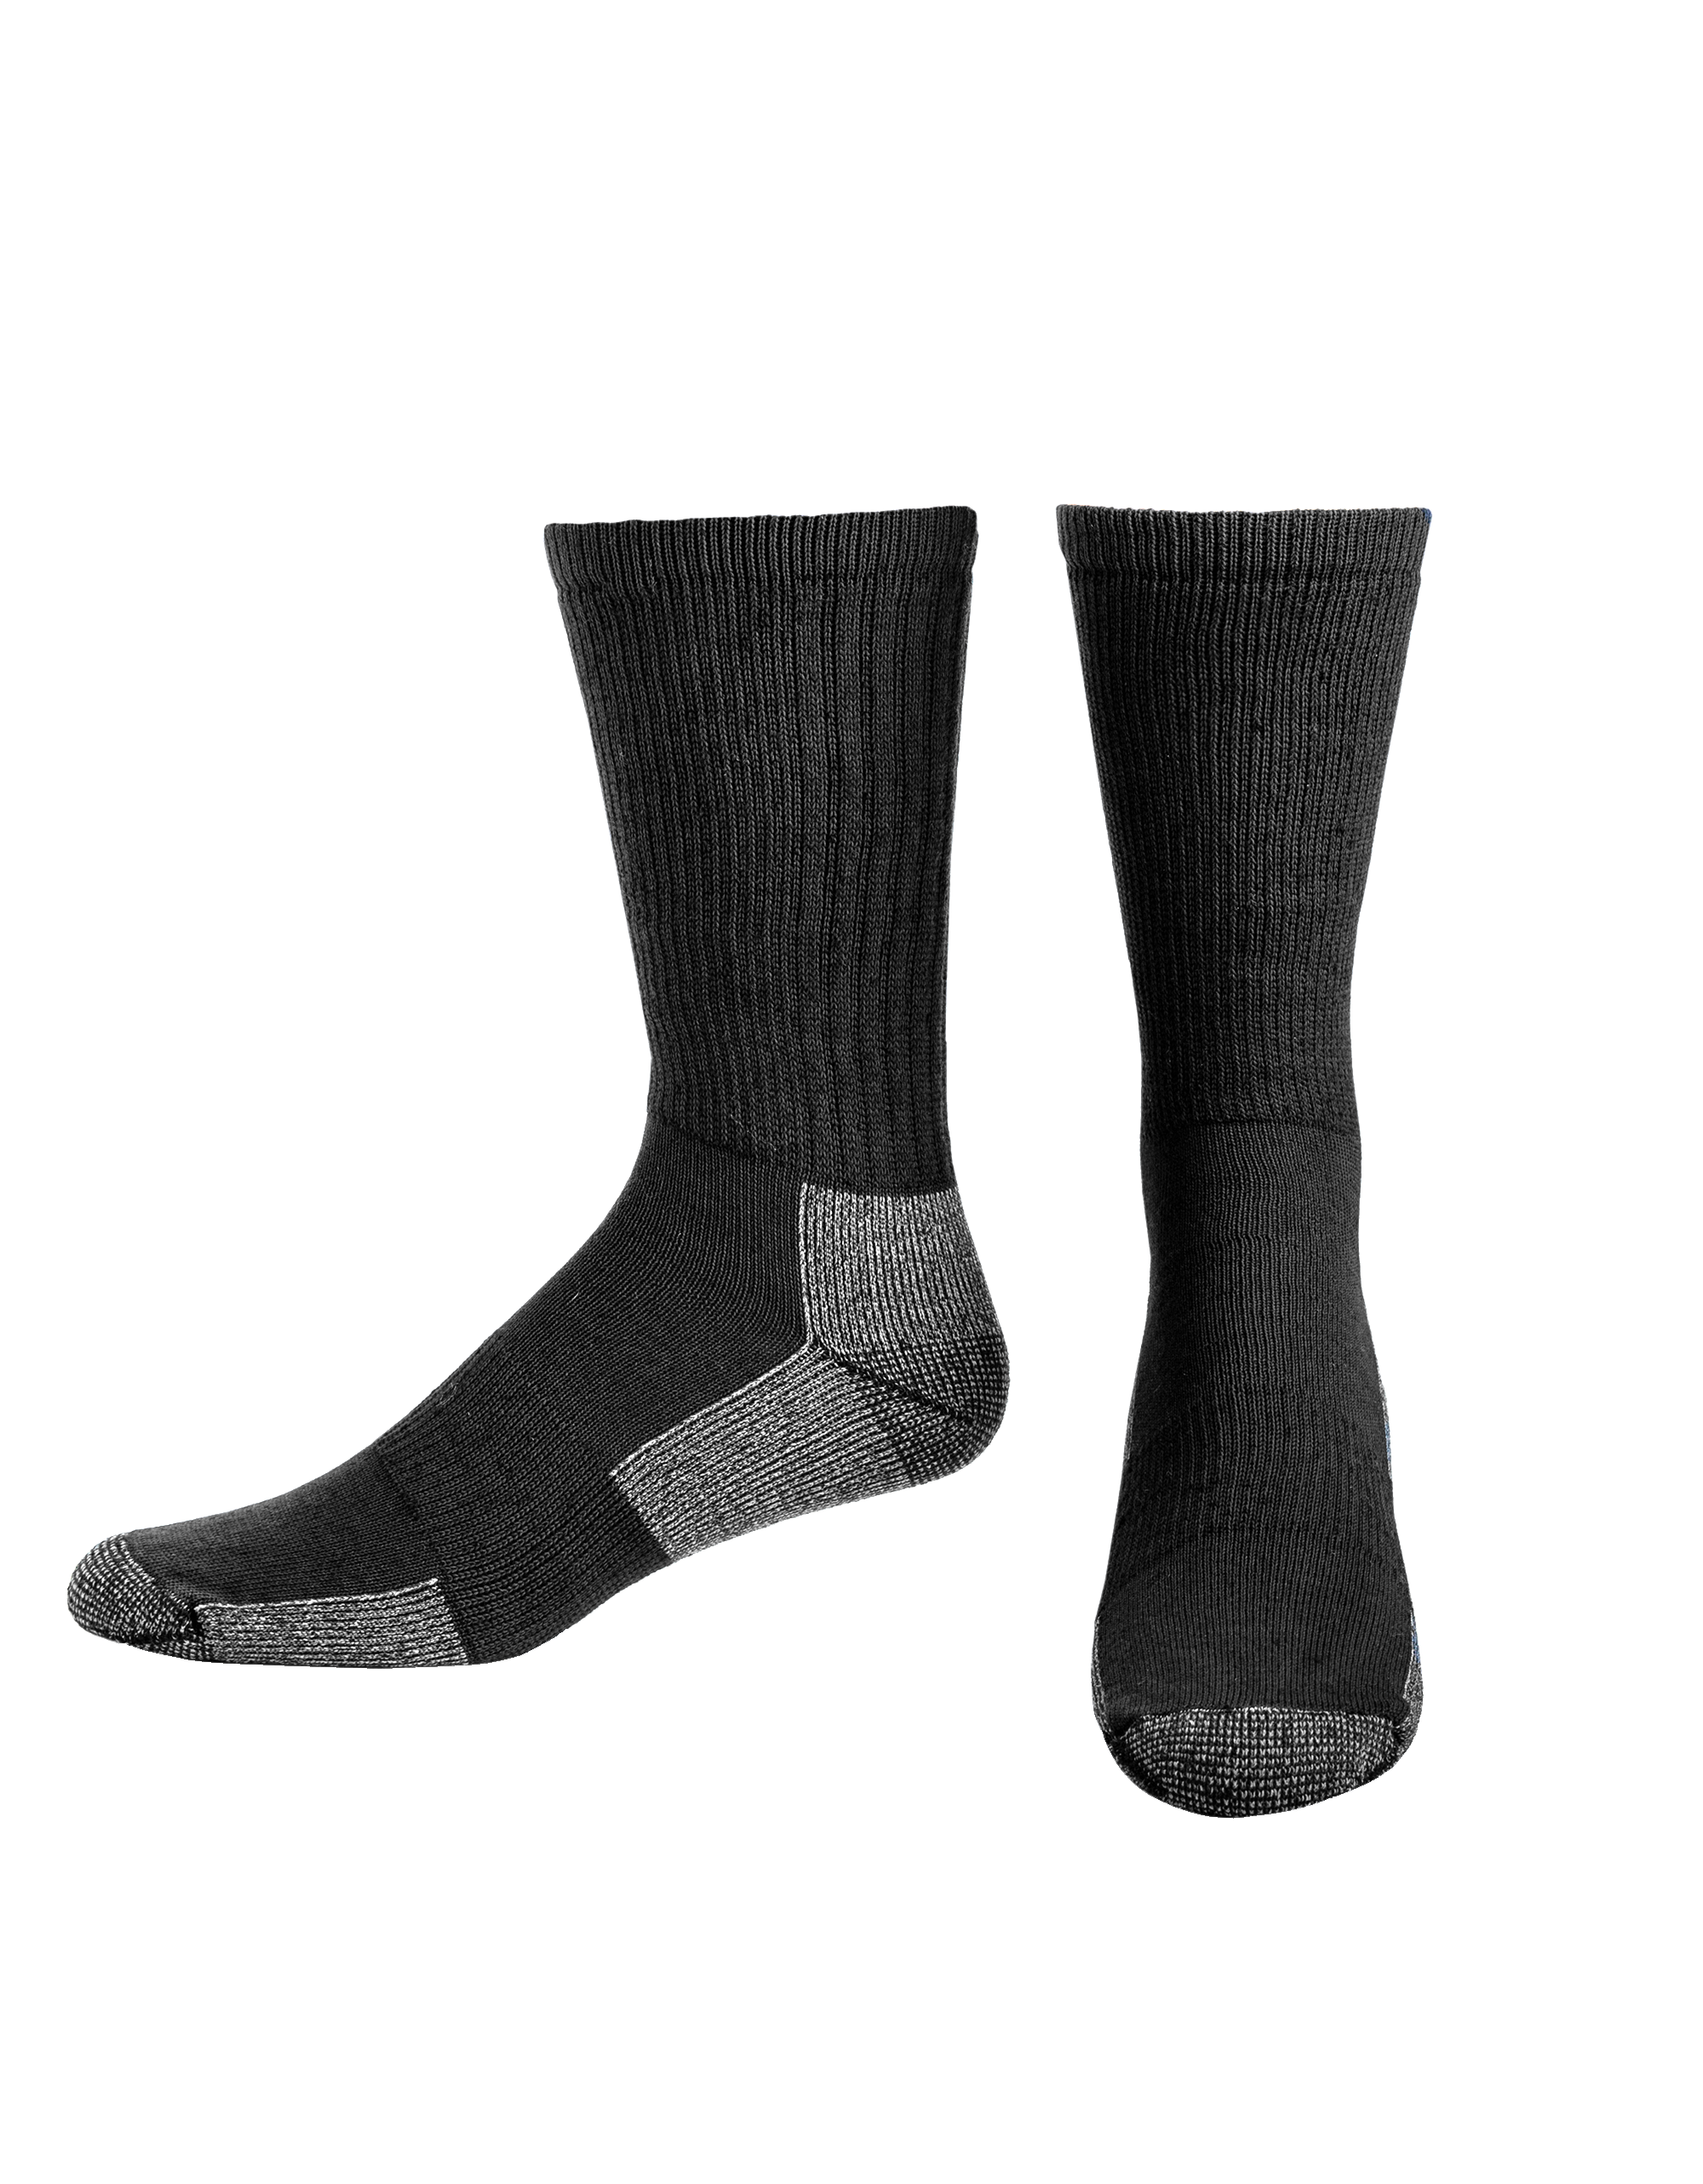 Men's Merino Wool Socks for Literacy